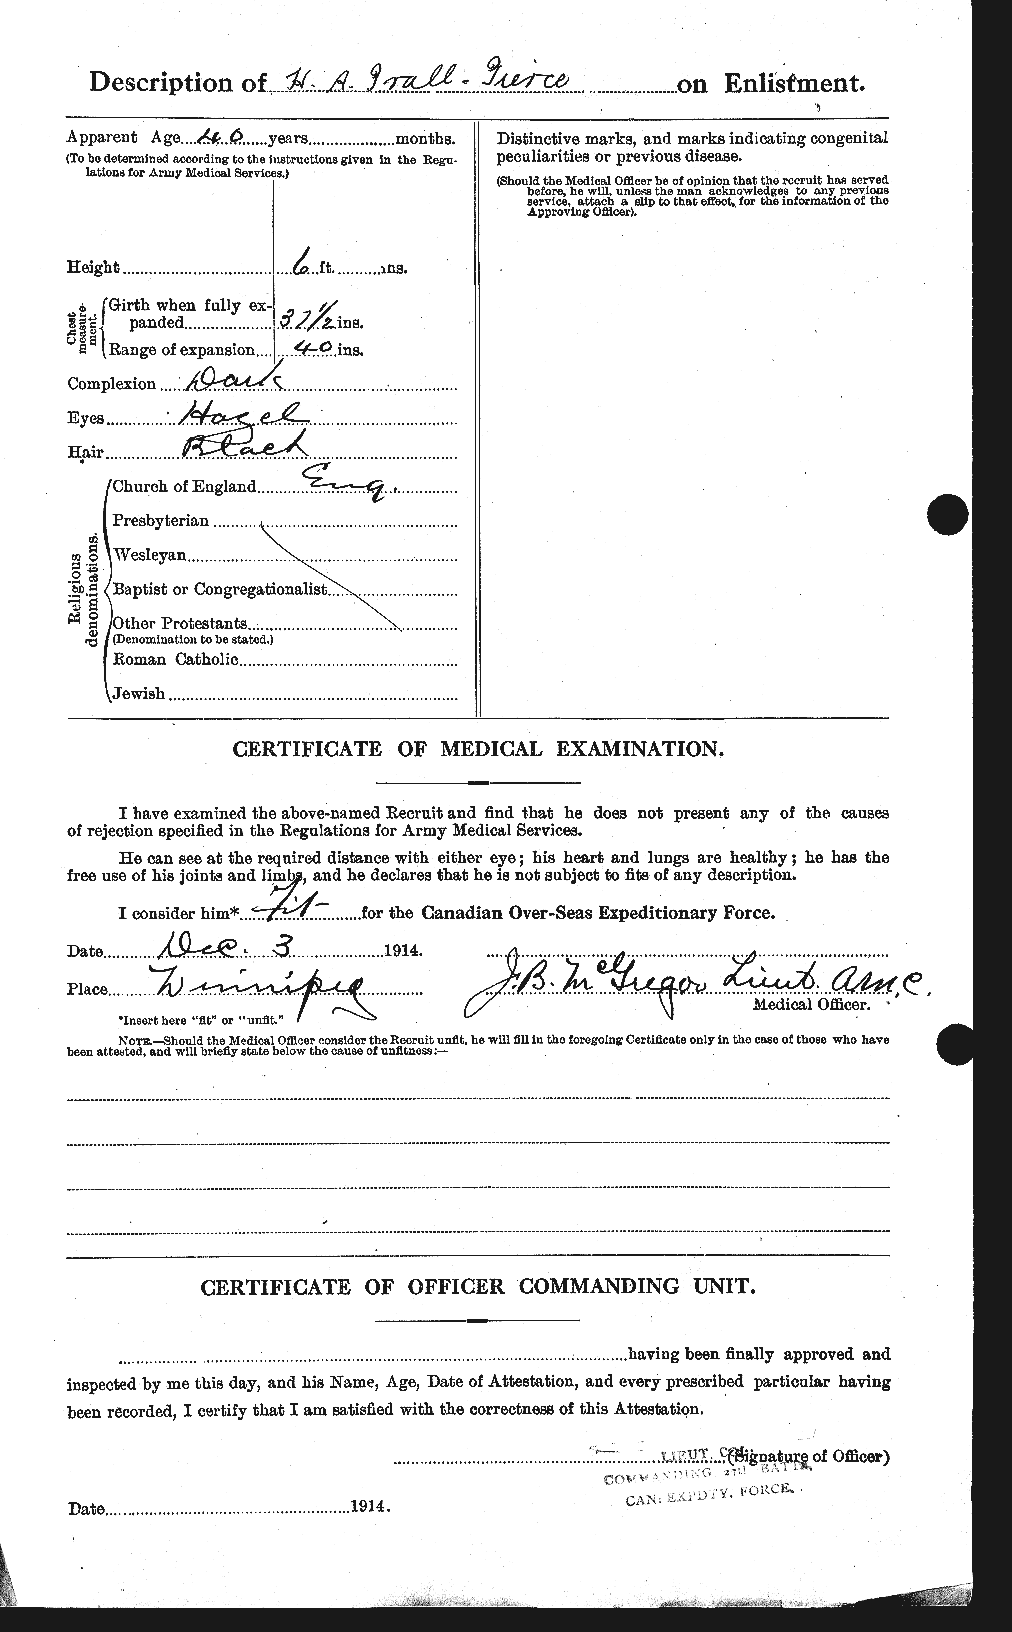 Dossiers du Personnel de la Première Guerre mondiale - CEC 586569b